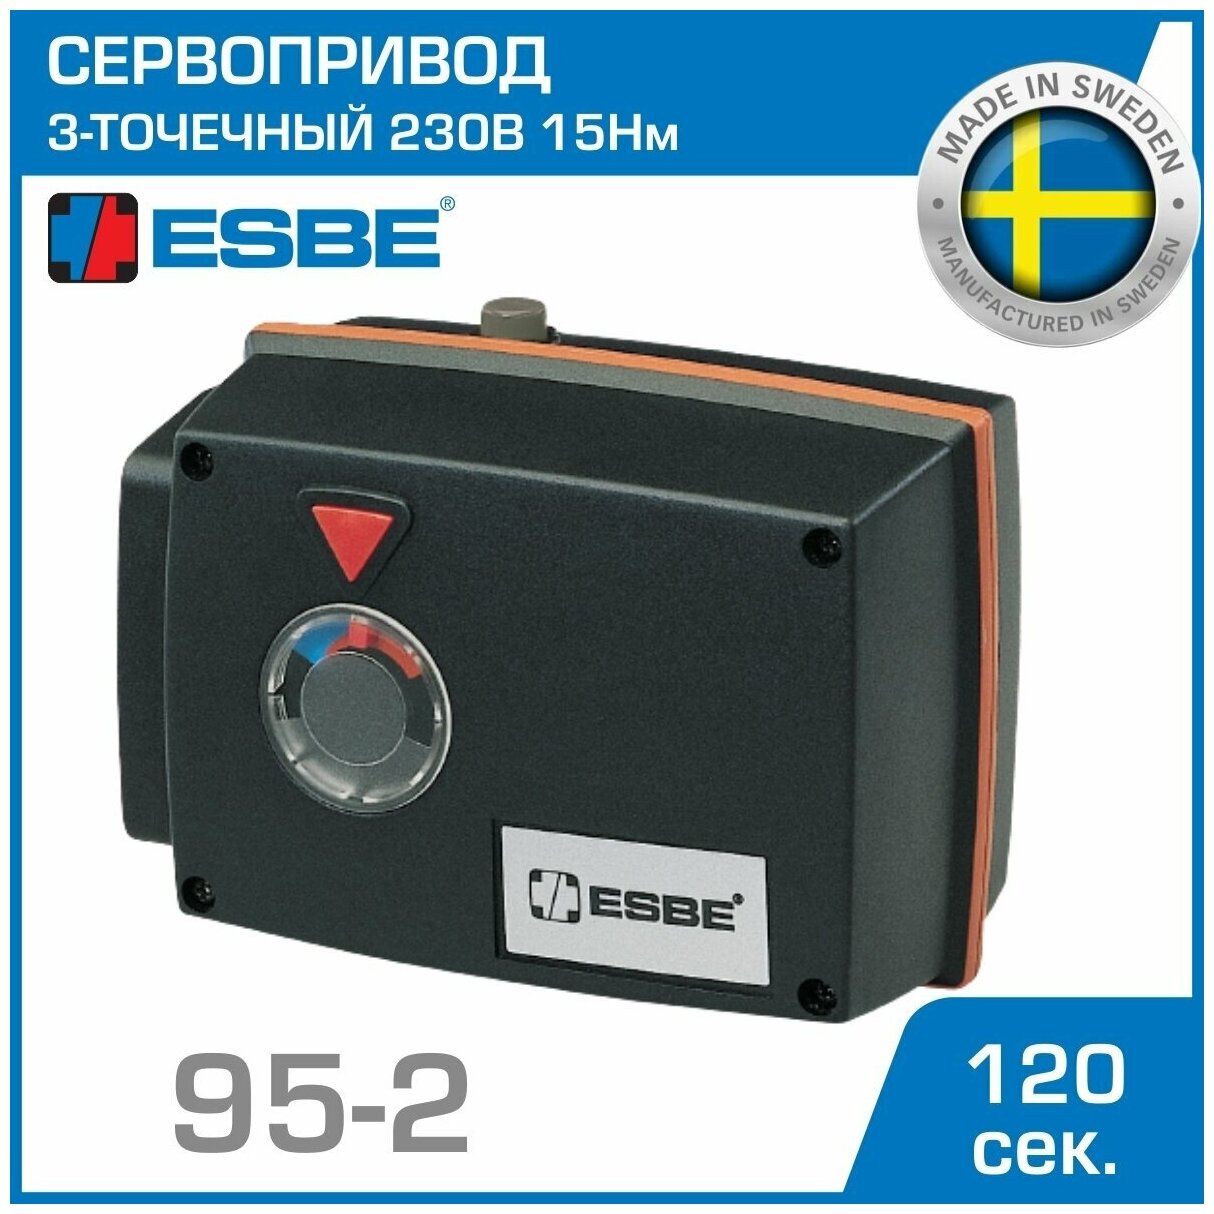 Электропривод ESBE 95-2 (12052000) с 3-точечным сигналом 3-P SPDT 230В 15Нм 50Гц 120сек / сервопривод для управления смесительными клапанами серии F / трехточечный